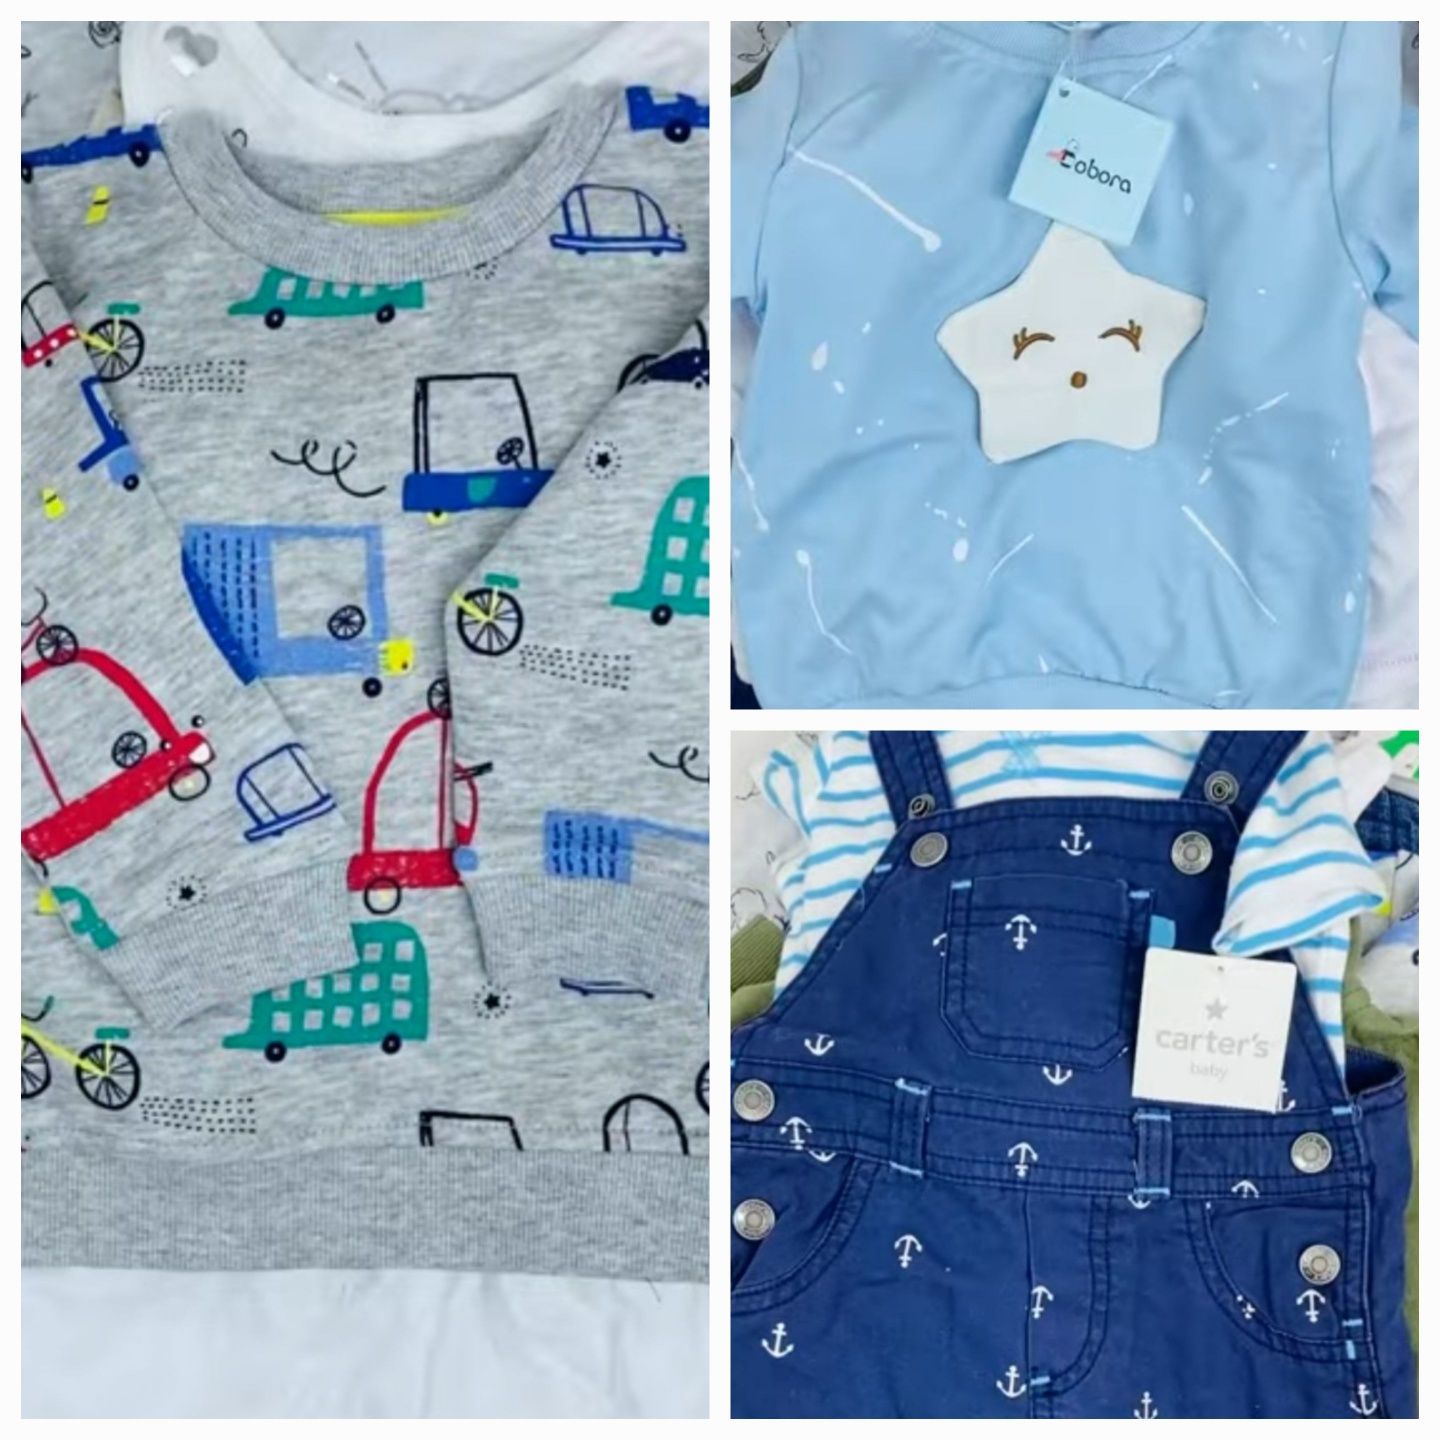 Дитячий одяг дитячі речі сток Європа міні лоти вибірка роздріб